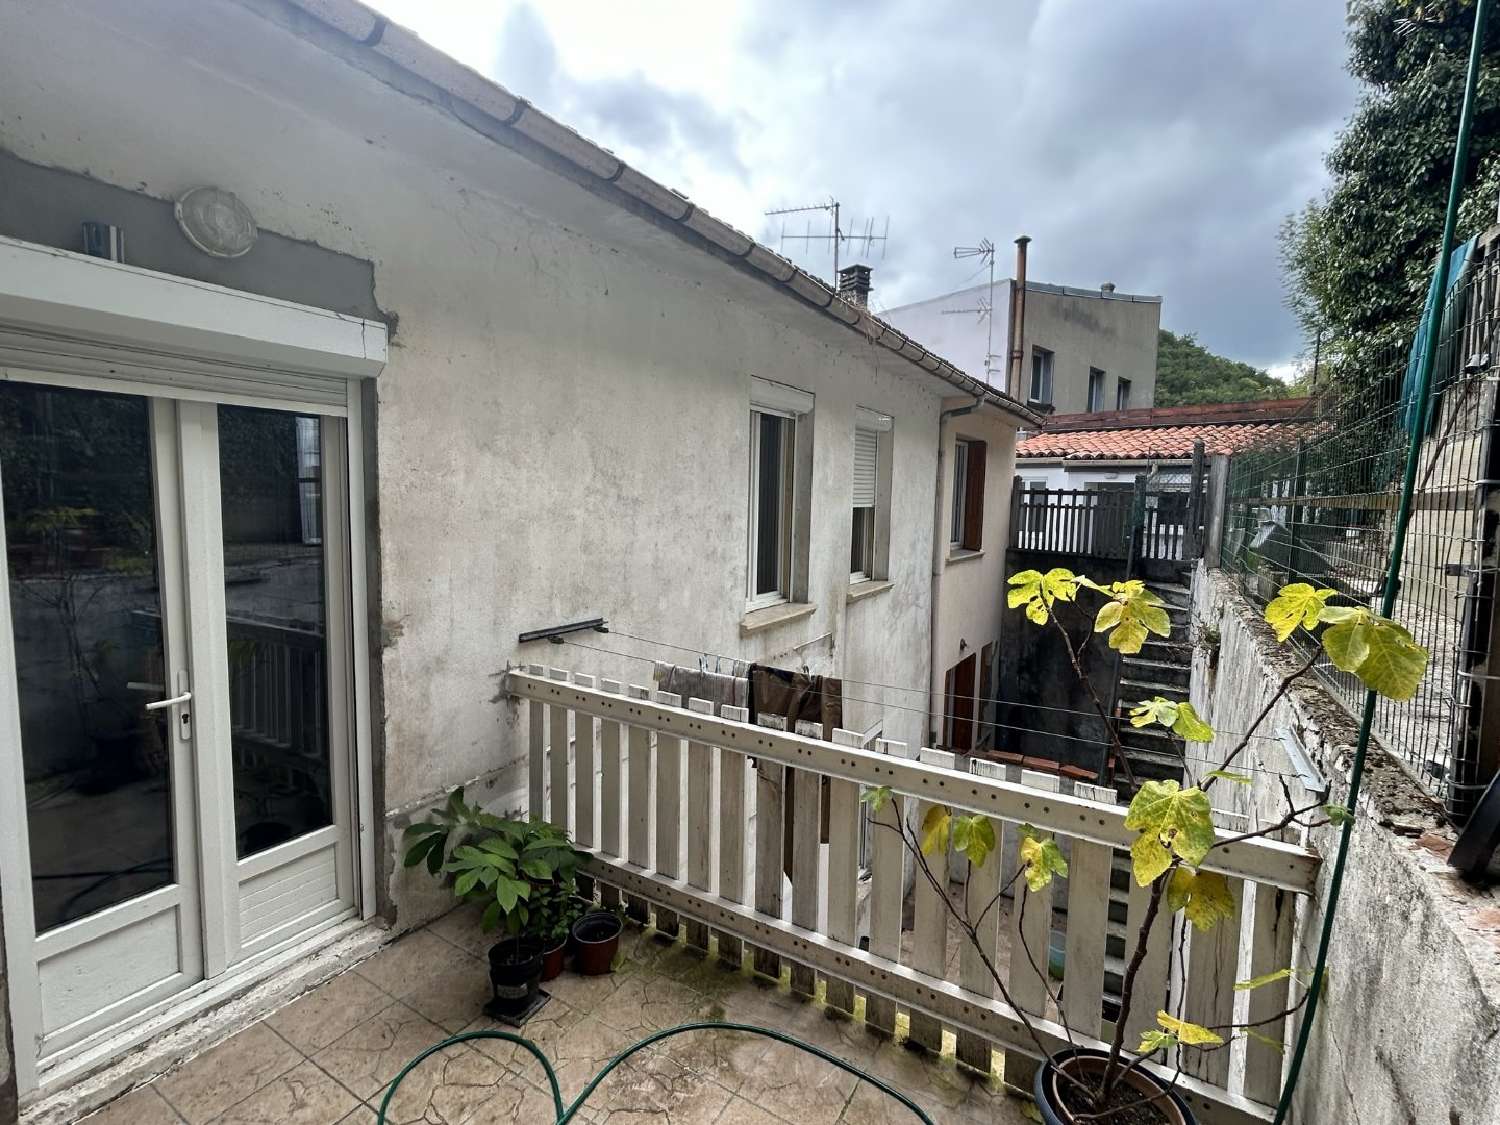  à vendre maison Lavelanet Ariège 4